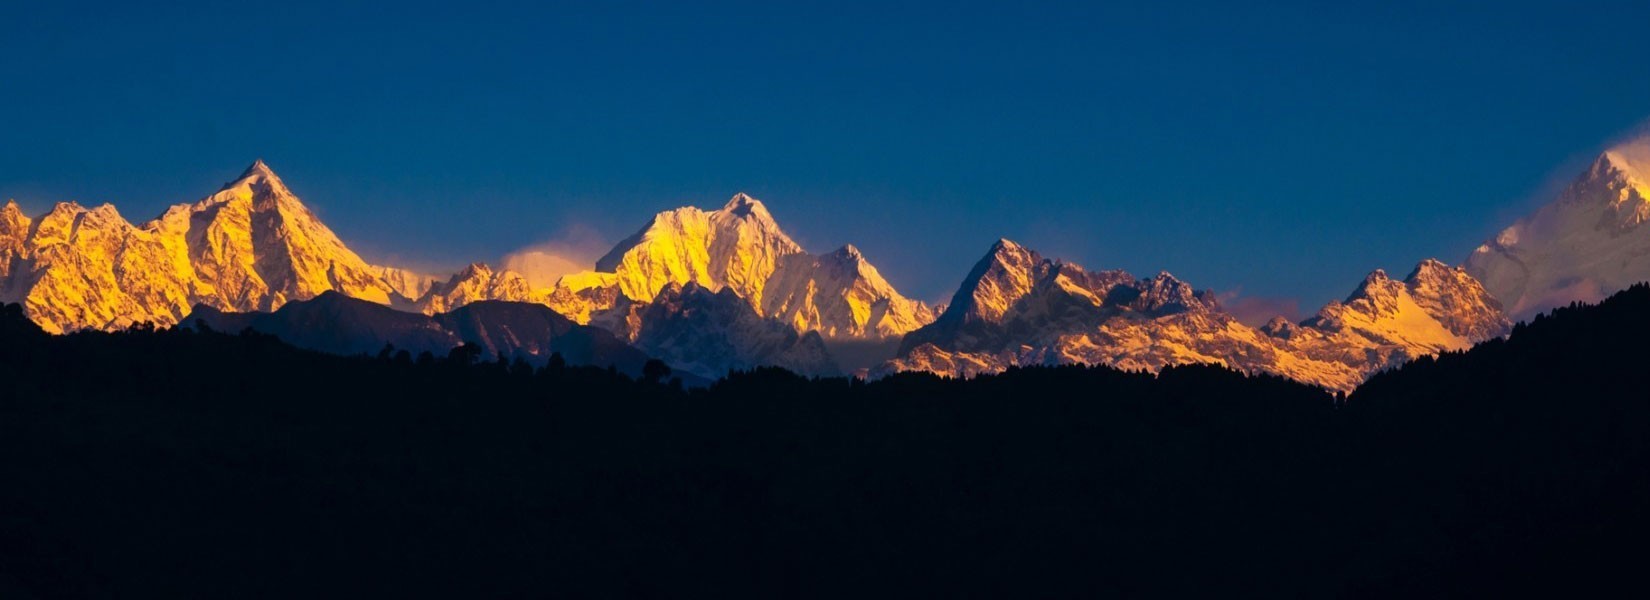 Panorama of Kanchenjunga massif at sunset